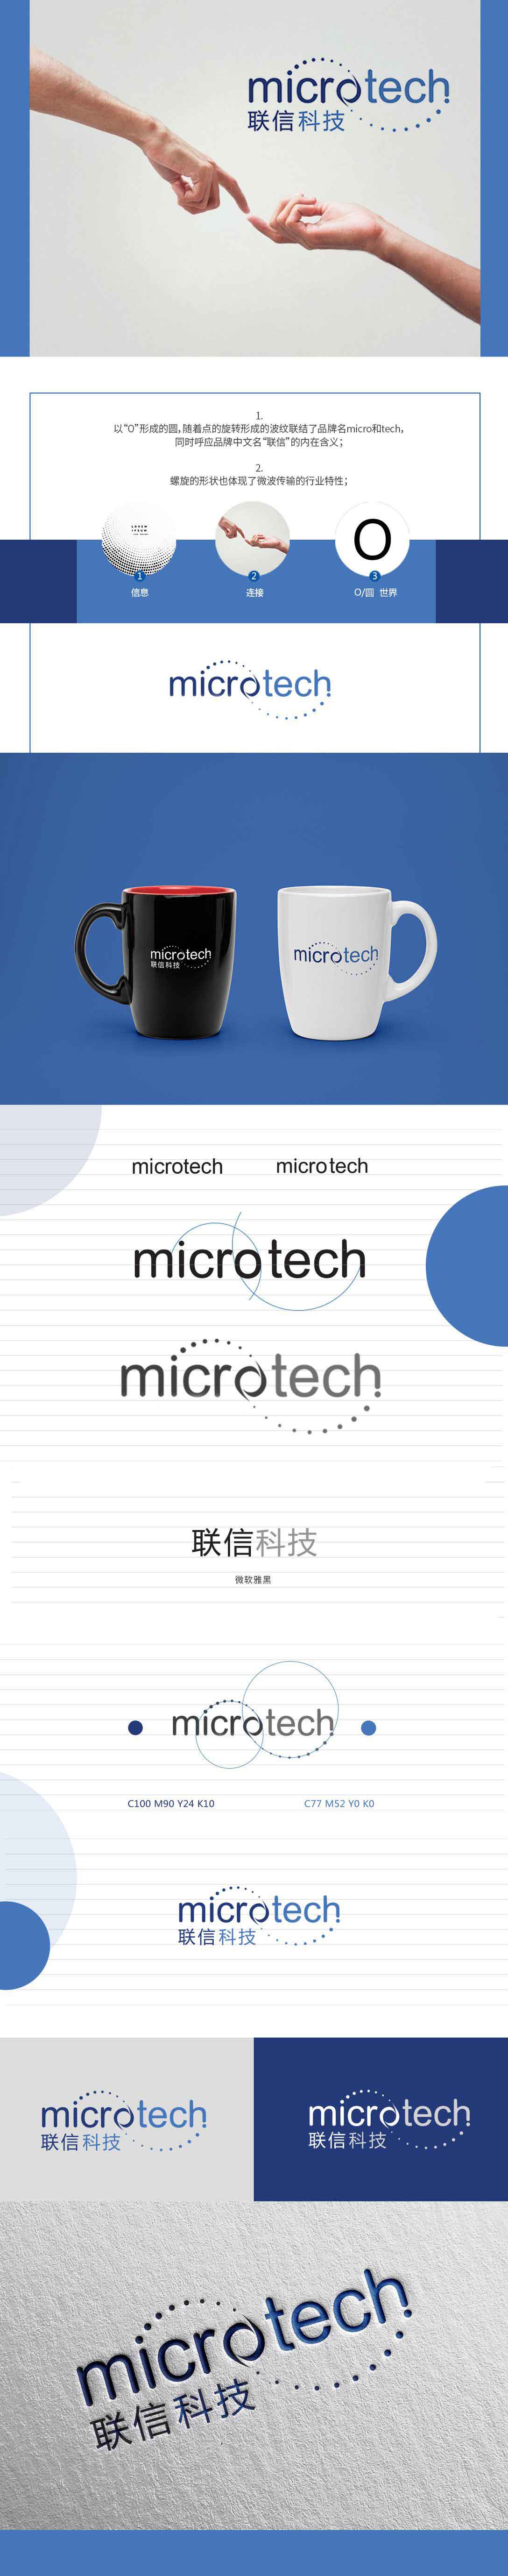 联信科技品牌logo设计平面效果图(图2)